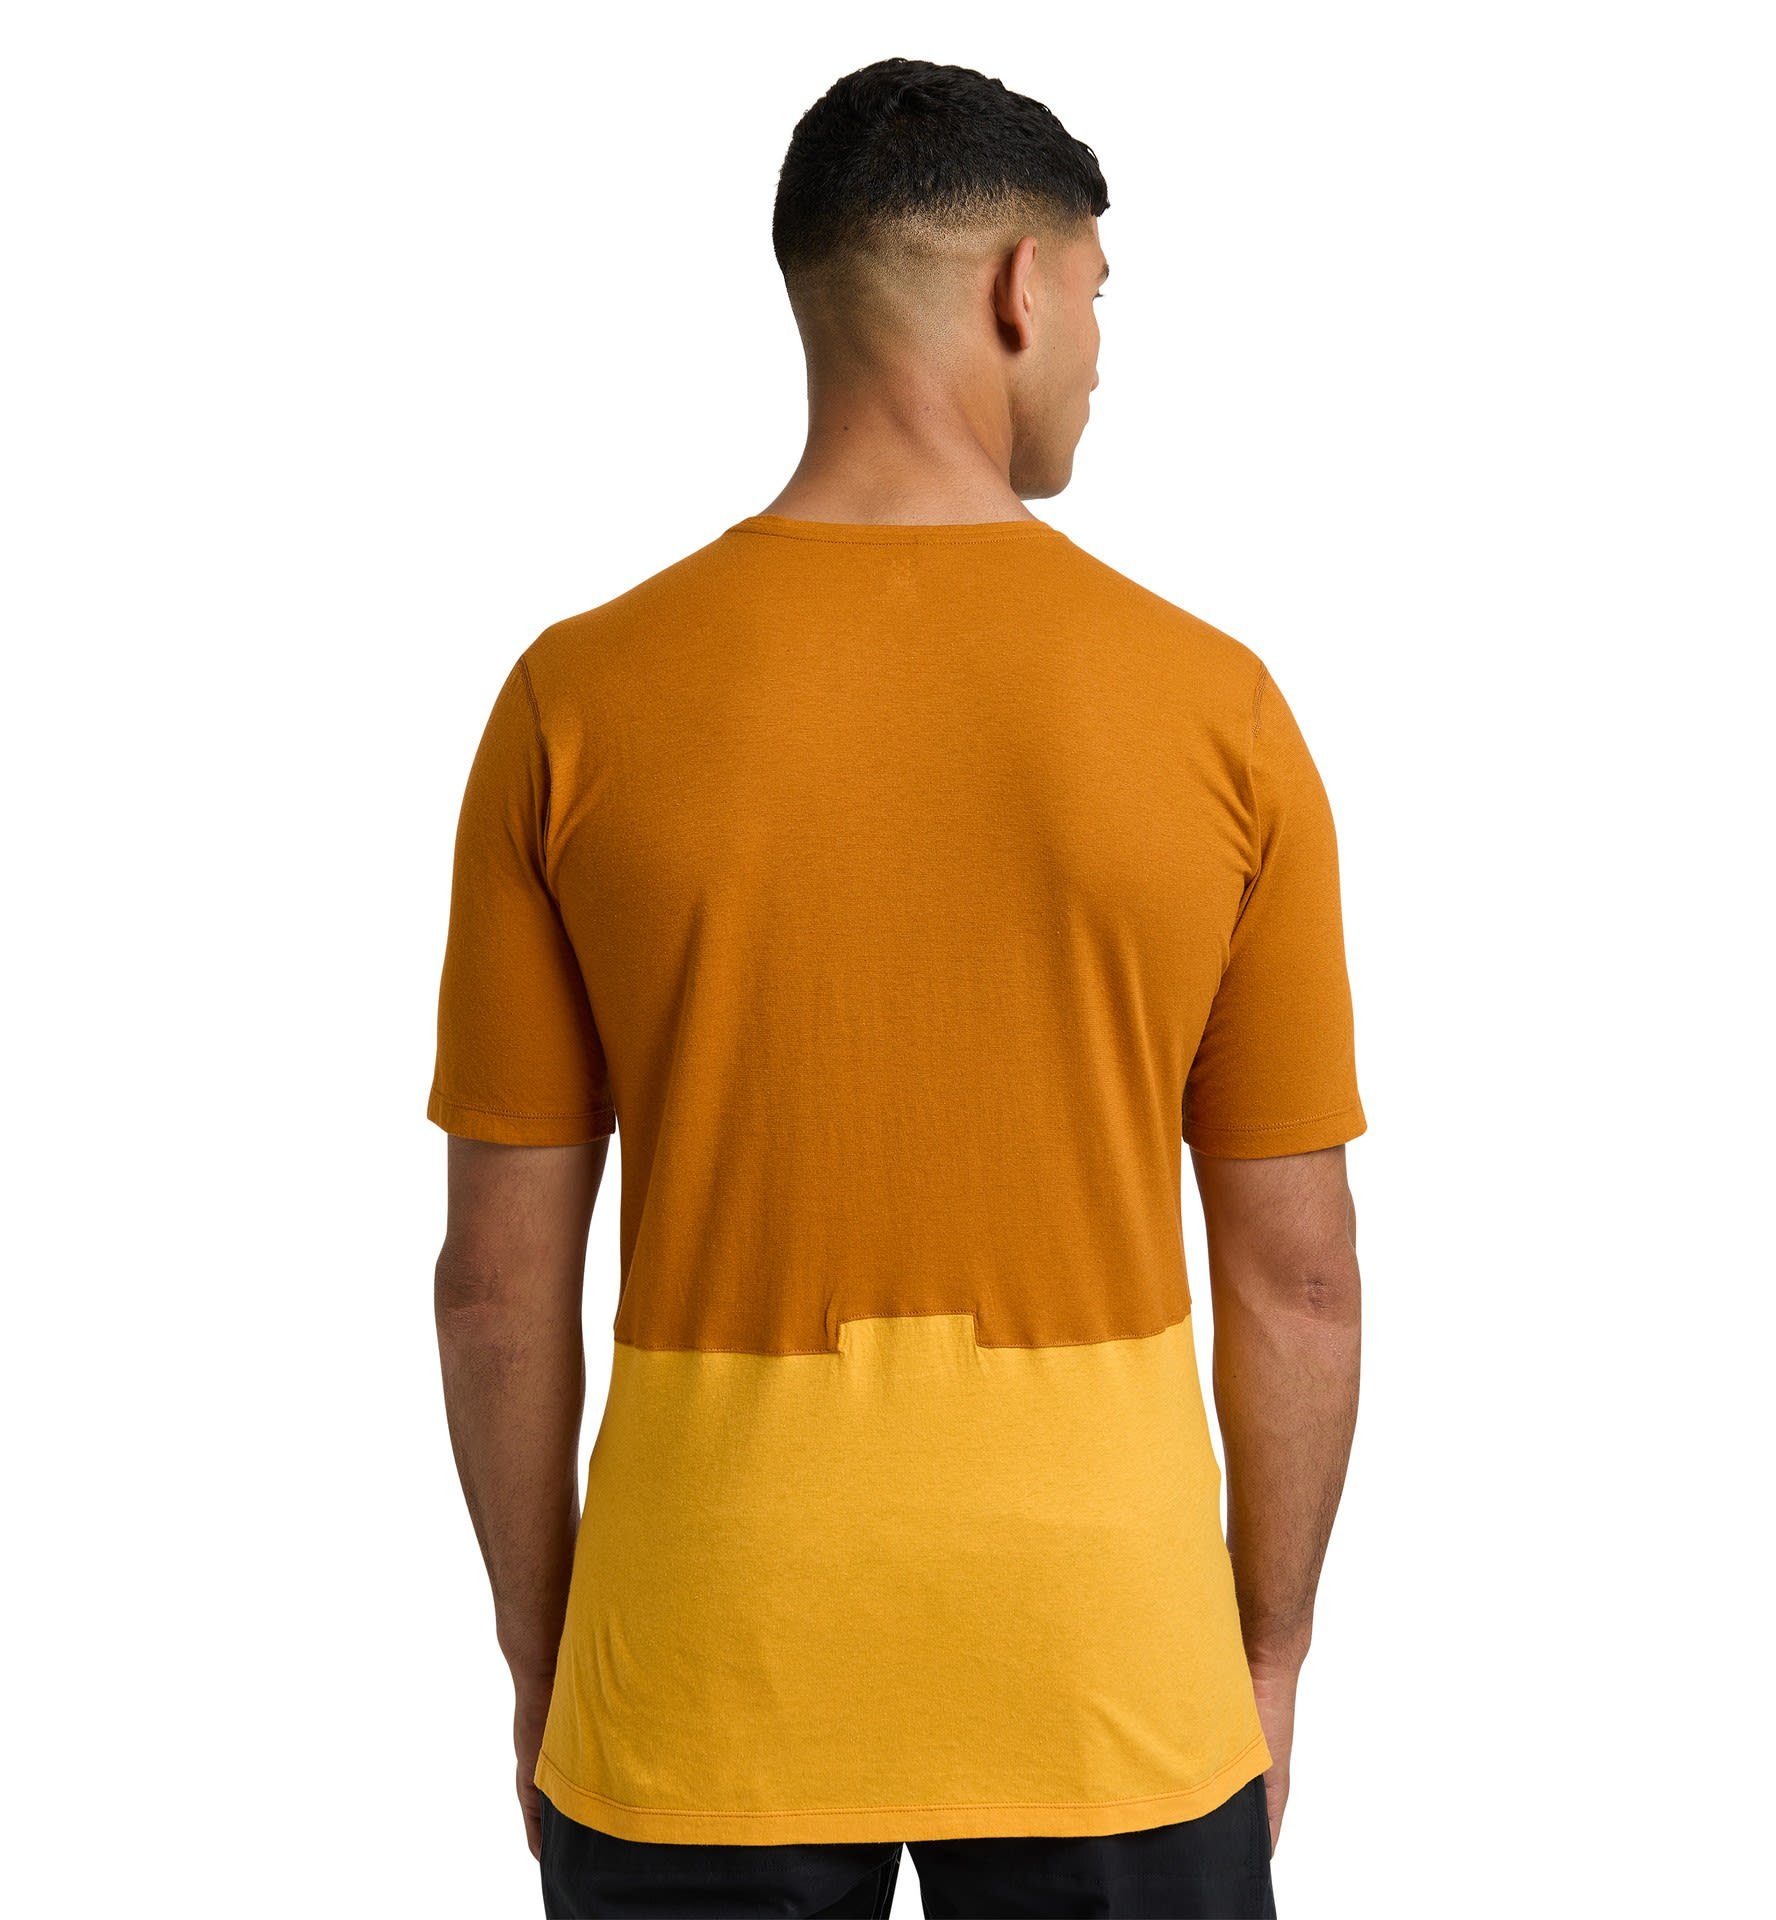 M Roc Haglöfs Haglöfs Golden Yellow Tee Grip Sunny T-Shirt Brown Herren Kurzarm-Shirt -